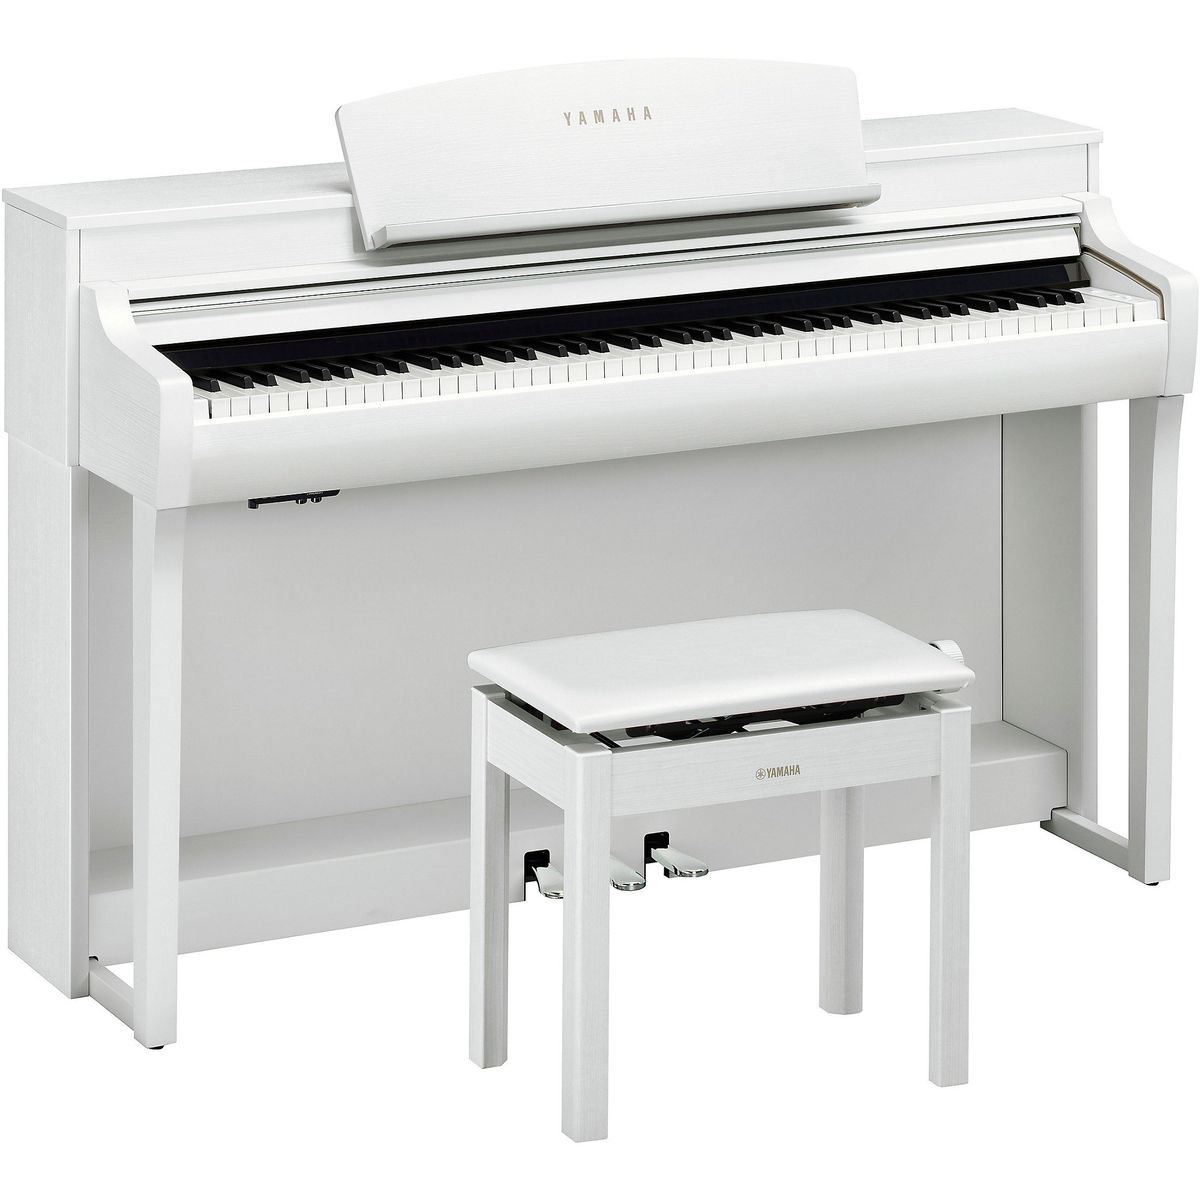 Цифровые пианино Yamaha CSP-255WH (банкетка в комплекте) 88 клавишная клавиатура с электронным пианино